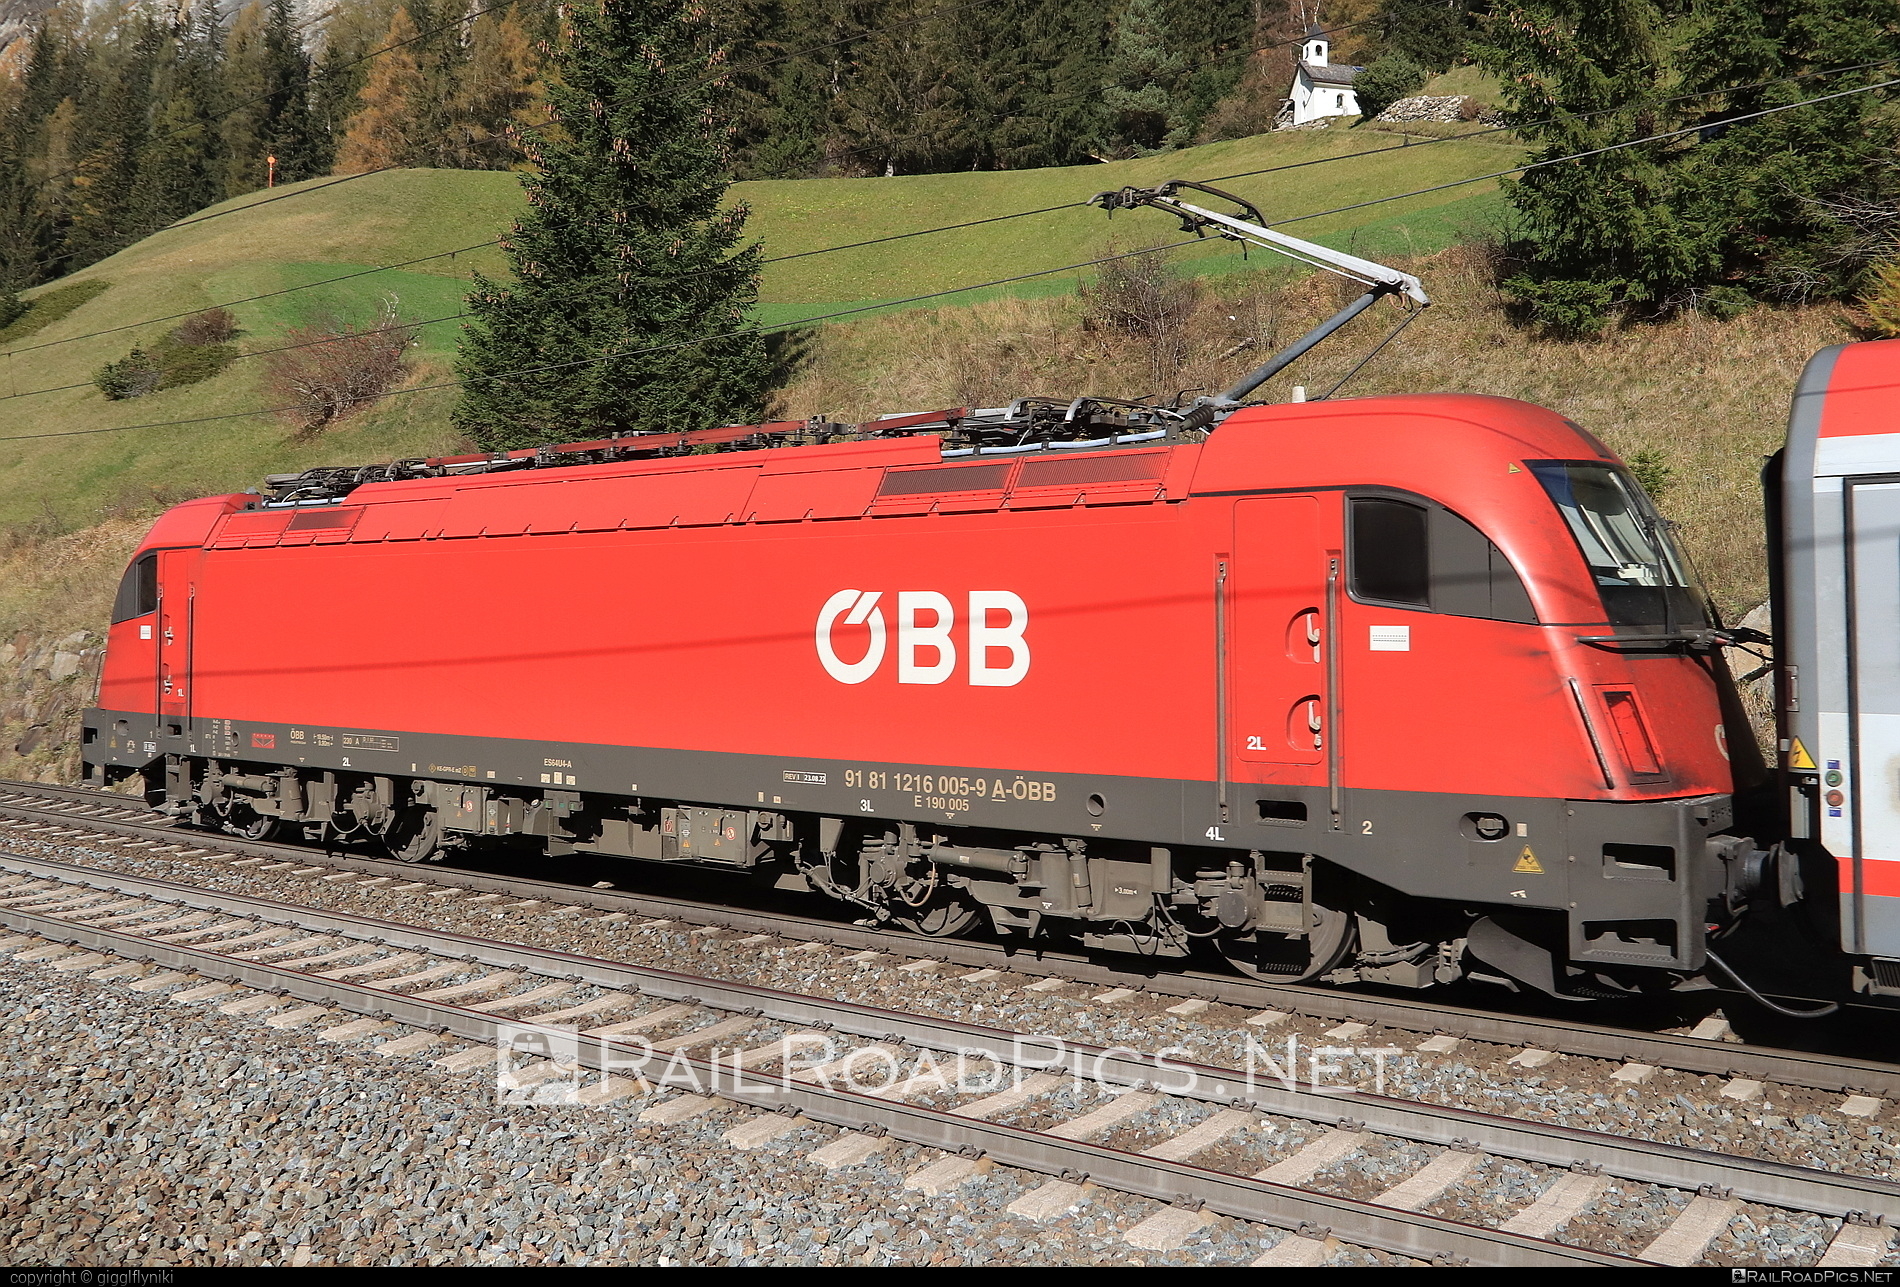 Siemens ES 64 U4 - 1216 005 operated by Österreichische Bundesbahnen #es64 #es64u4 #eurosprinter #obb #osterreichischebundesbahnen #siemens #siemensEs64 #siemensEs64u4 #siemenstaurus #taurus #tauruslocomotive